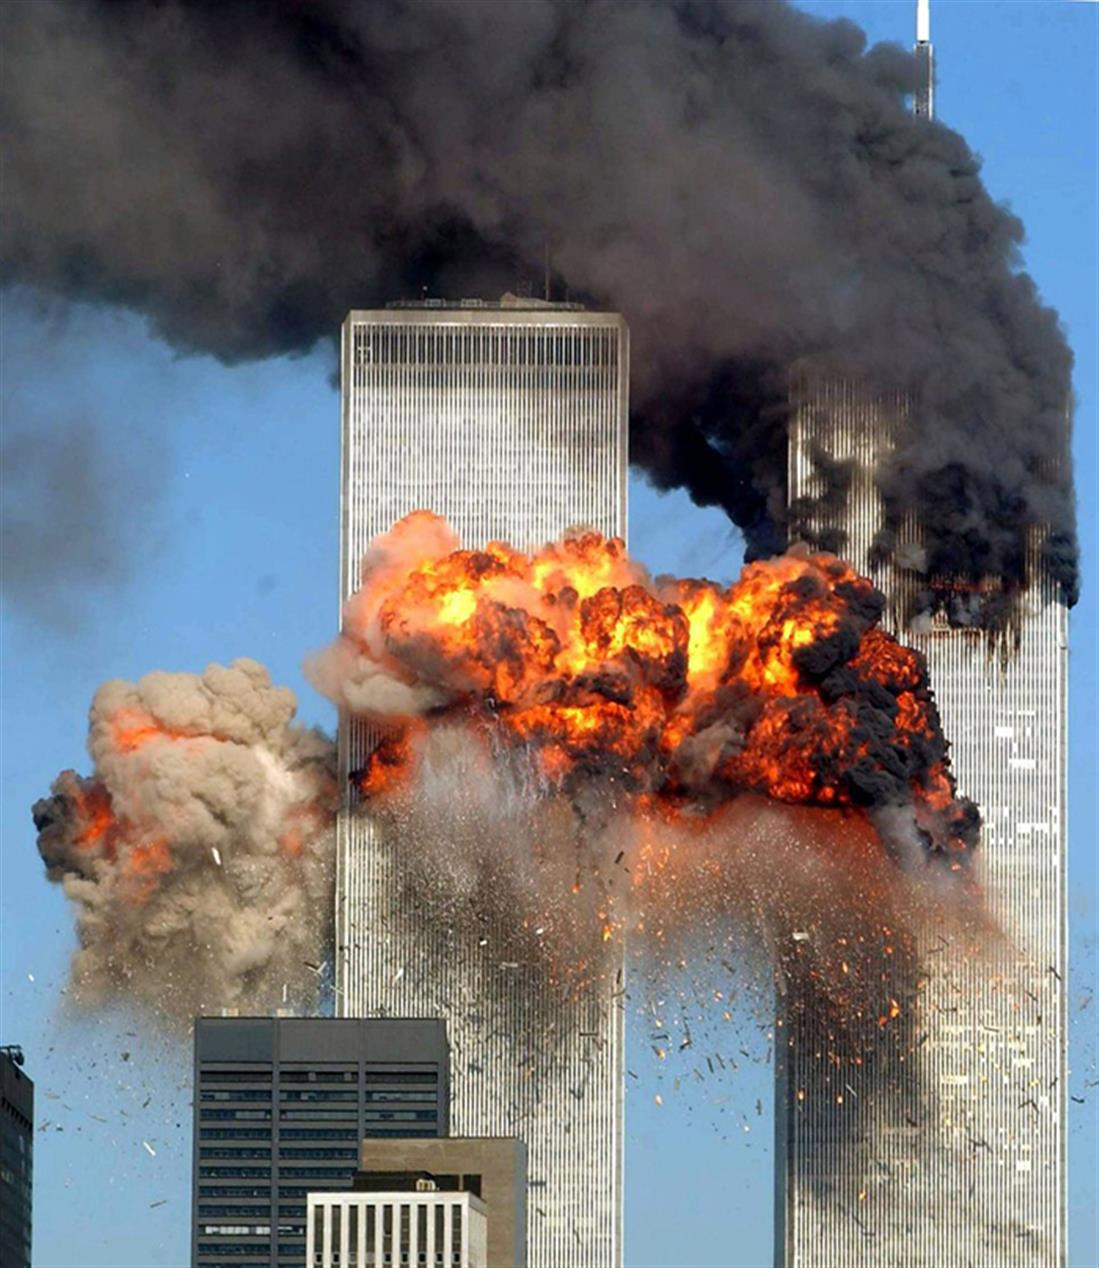 11η Σεπτεμβρίου - δίδυμοι πύργοι - τρομοκρατική επίθεση - Νέα Υόρκη